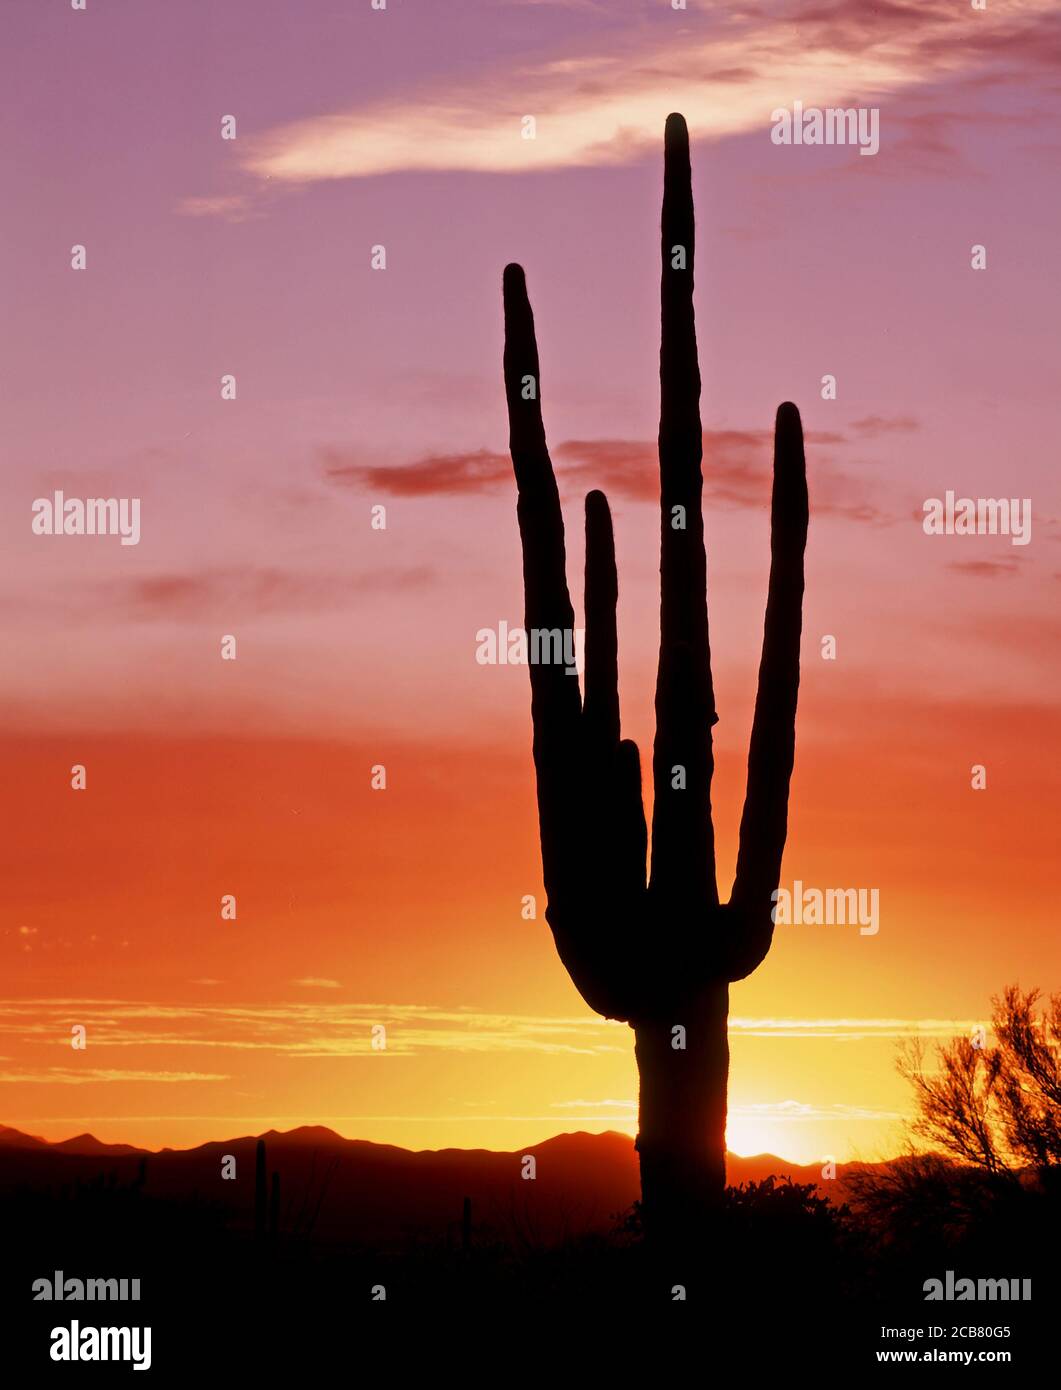 Cactua silhouetted aganist ein Sonnenuntergang Himmel, in Organ Pipe Cactus National Monument in der Sonoran Wüste im Süden von Arizona in den Vereinigten Staaten Stockfoto